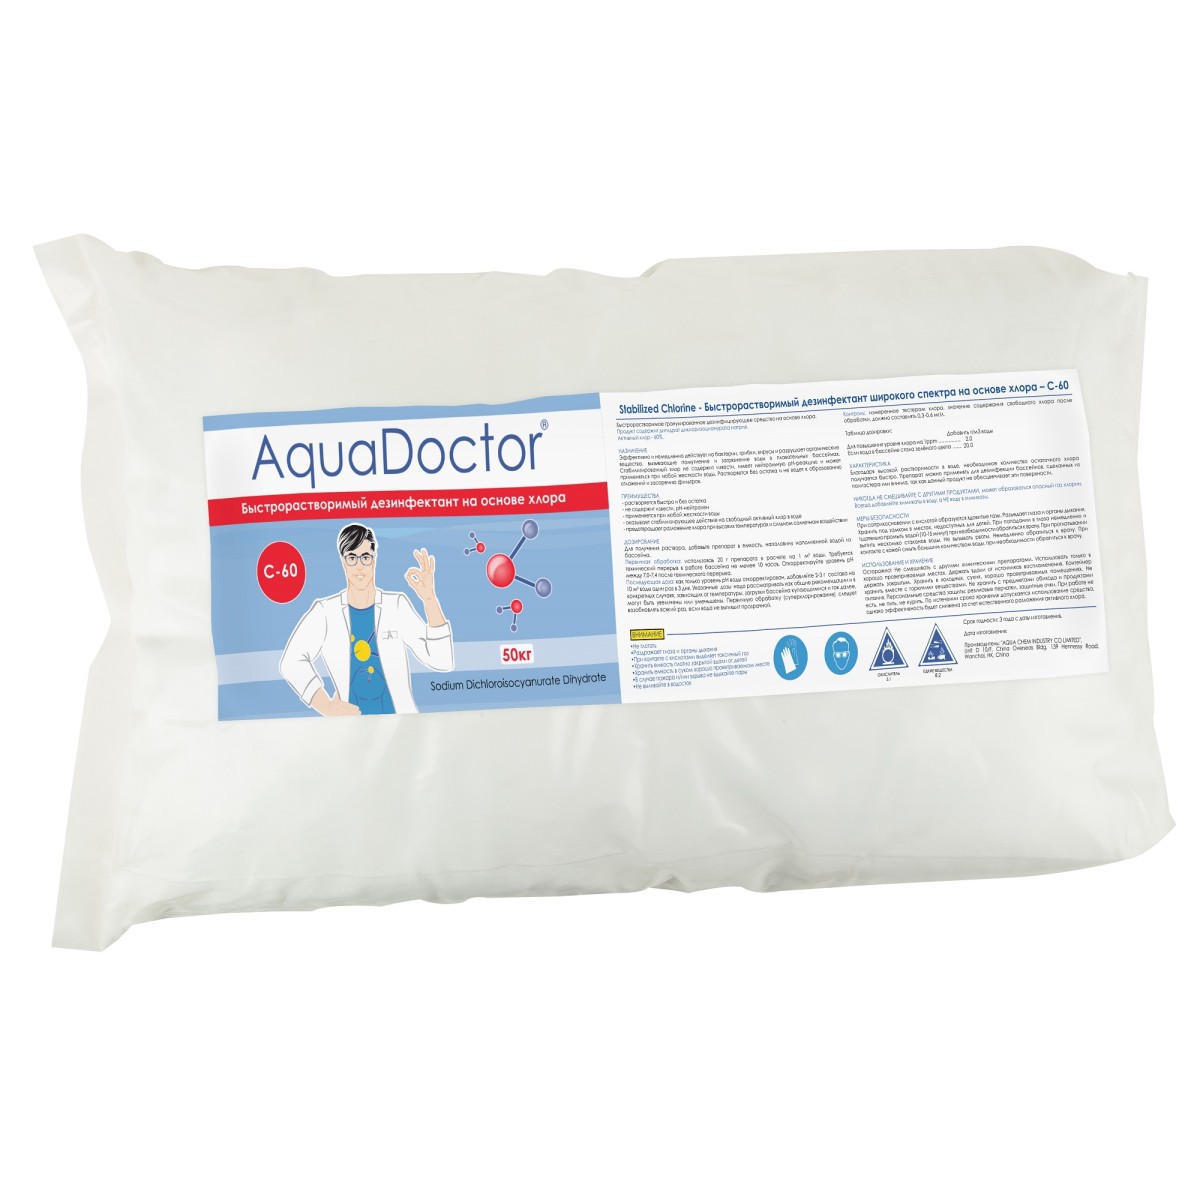 Средство для чистки бассейна AquaDoctor AQ1551 C-60 50 кг